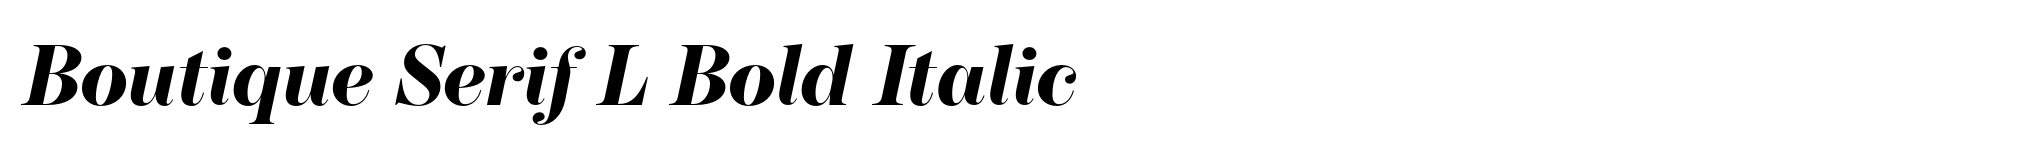 Boutique Serif L Bold Italic image